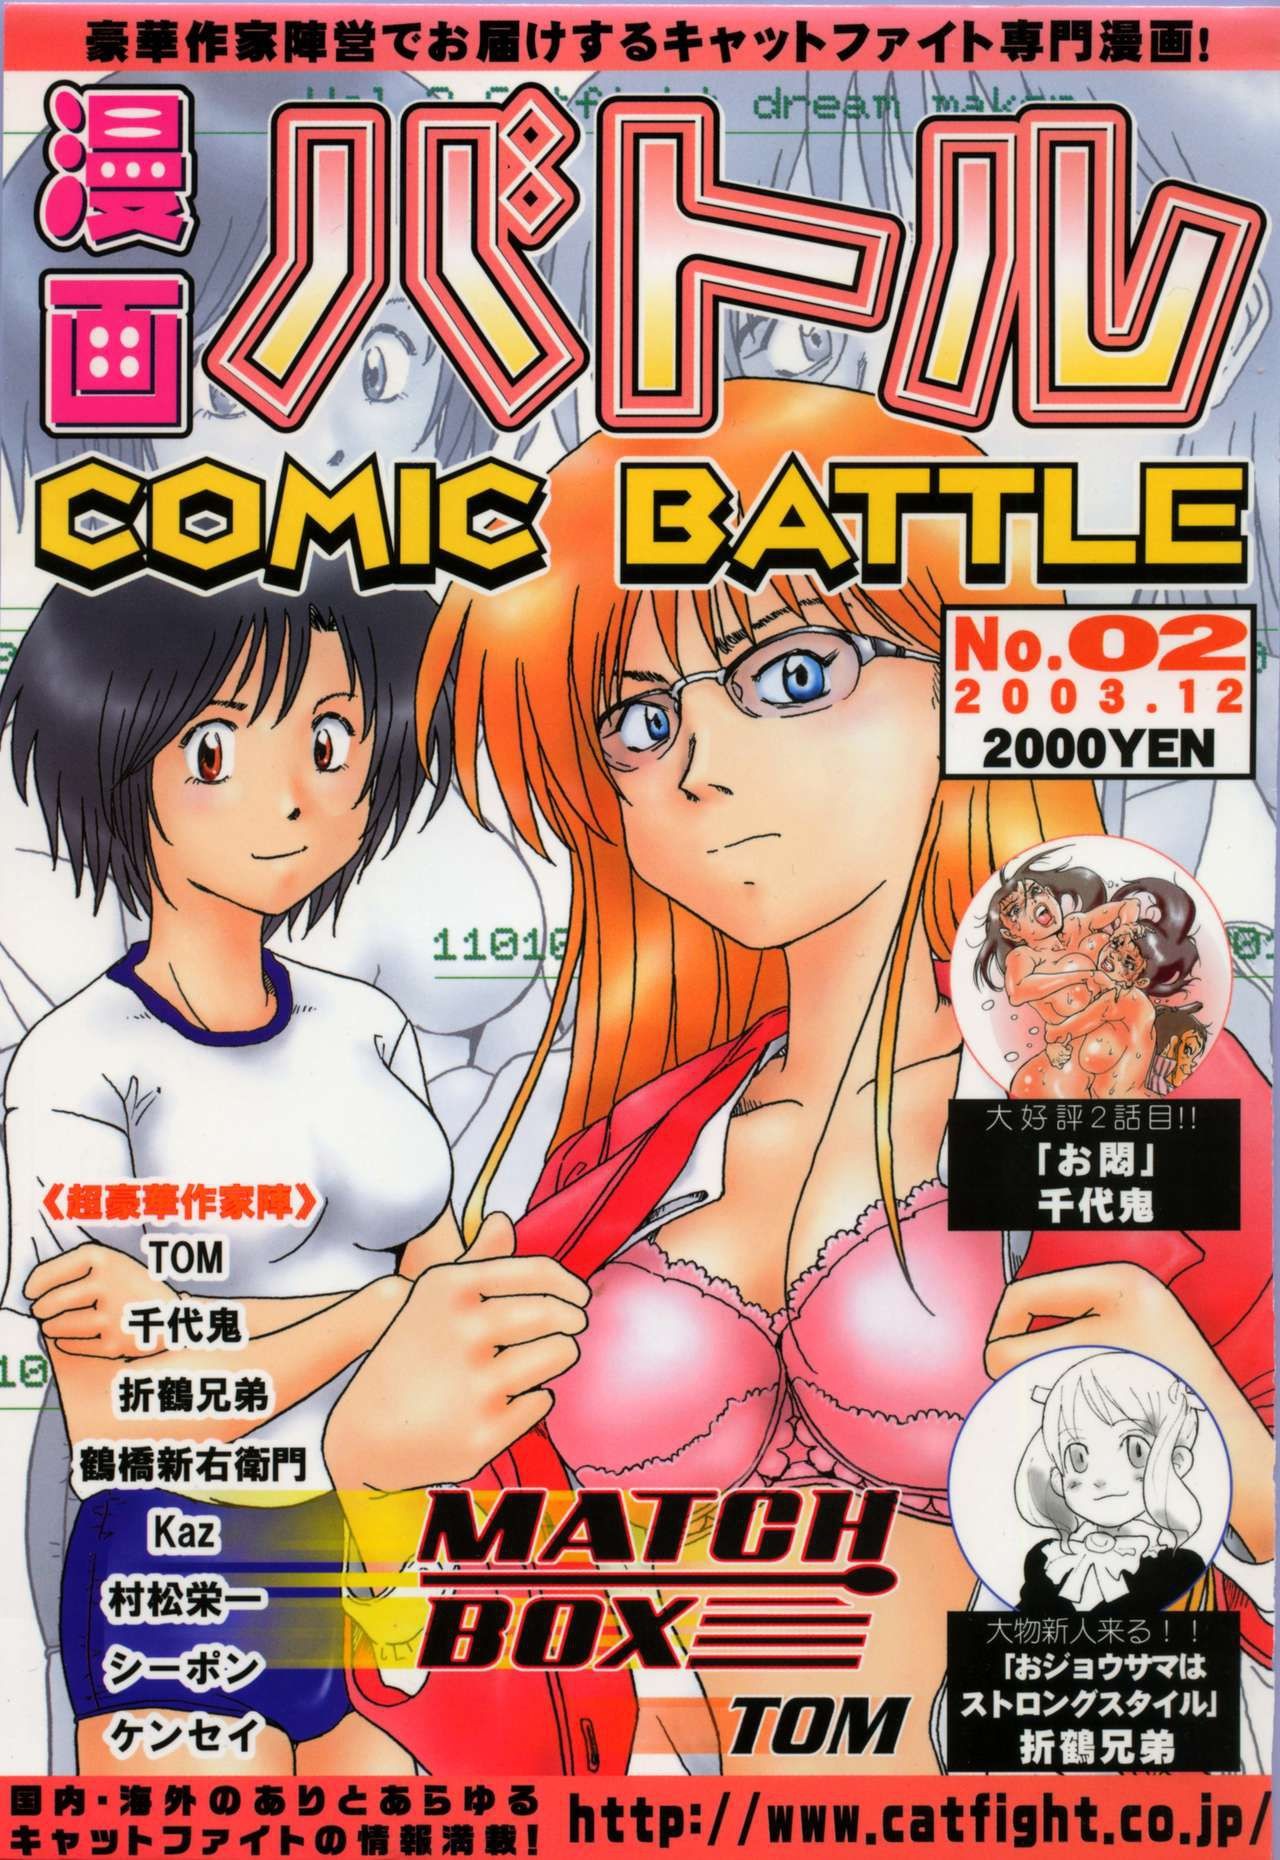 Juggs Manga Battle Volume 2 China